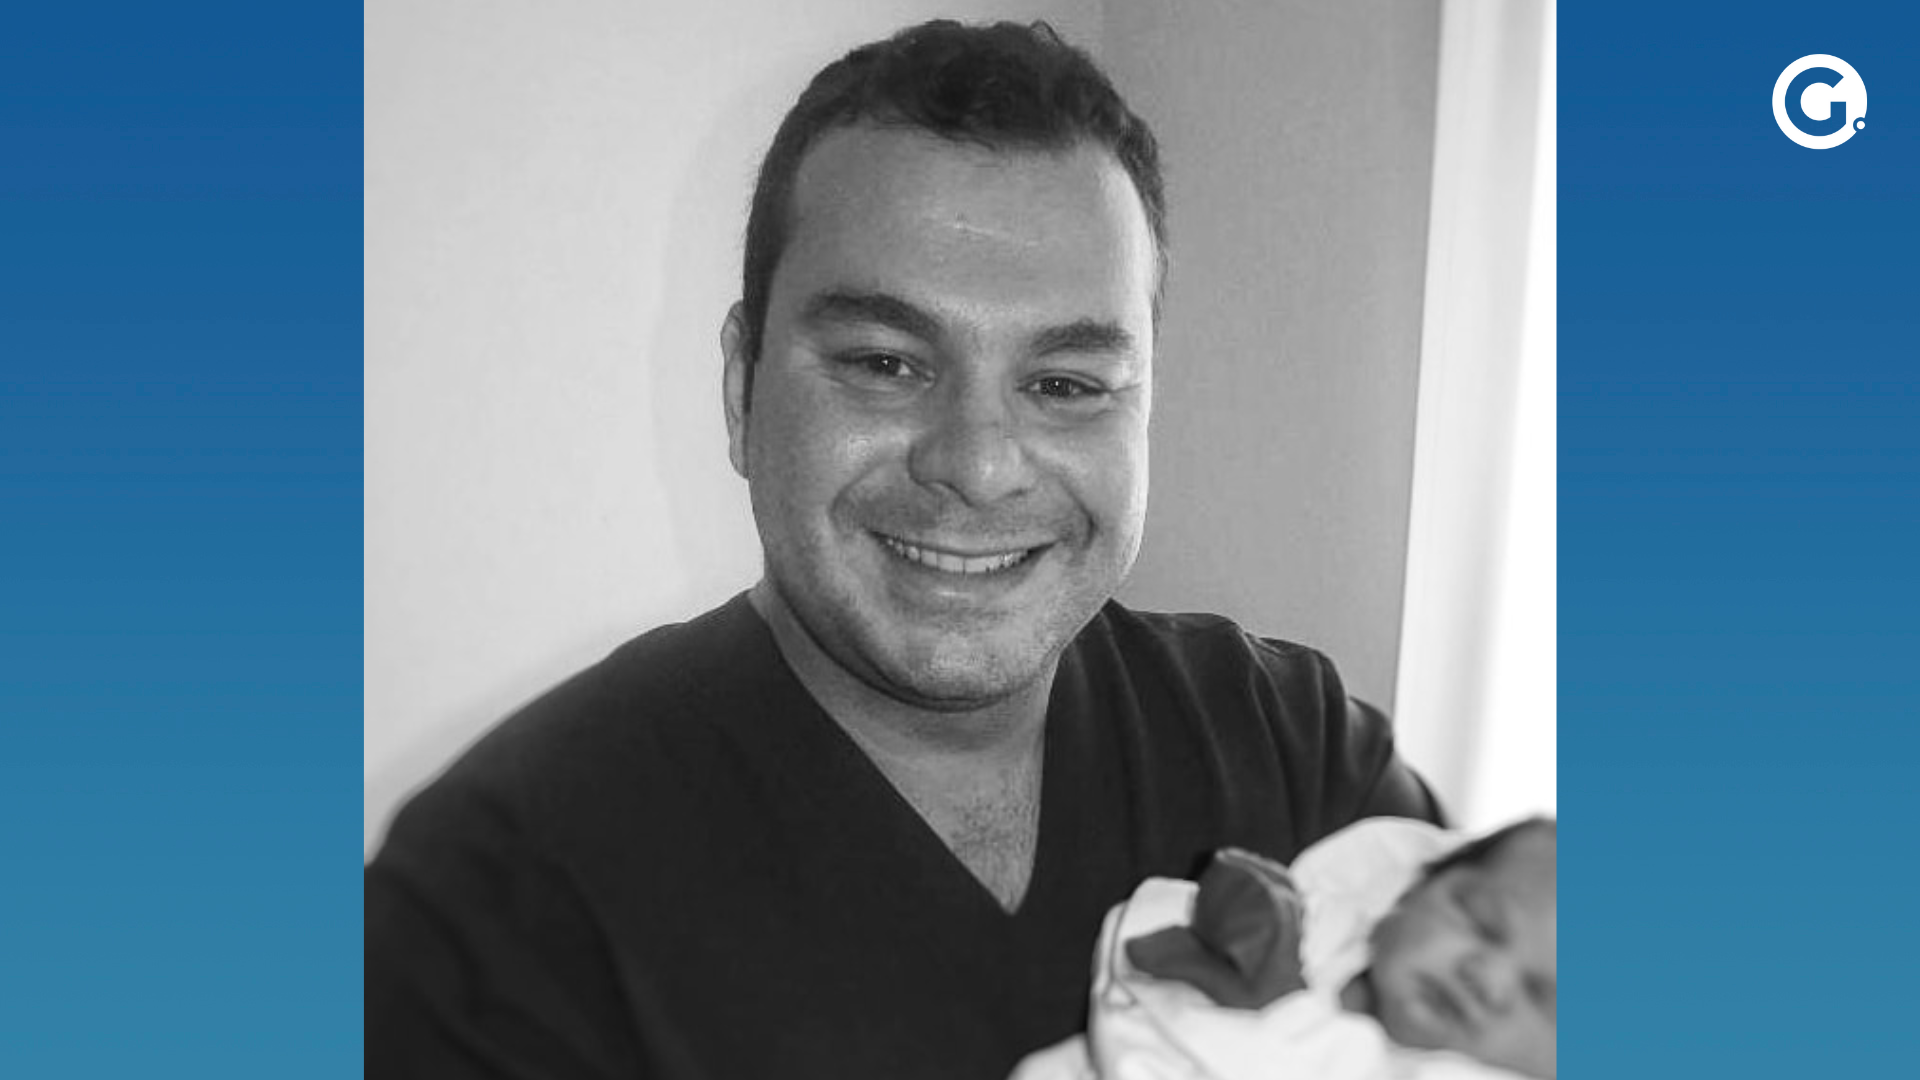 Rafael Teixeira Ribeiro era professor e trabalhava no Hospital Maternidade São José, em Colatina. Ele foi um dos médicos responsáveis por salvar a vida da bebê que nasceu 44 dias após a morte cerebral da mãe, em 2016